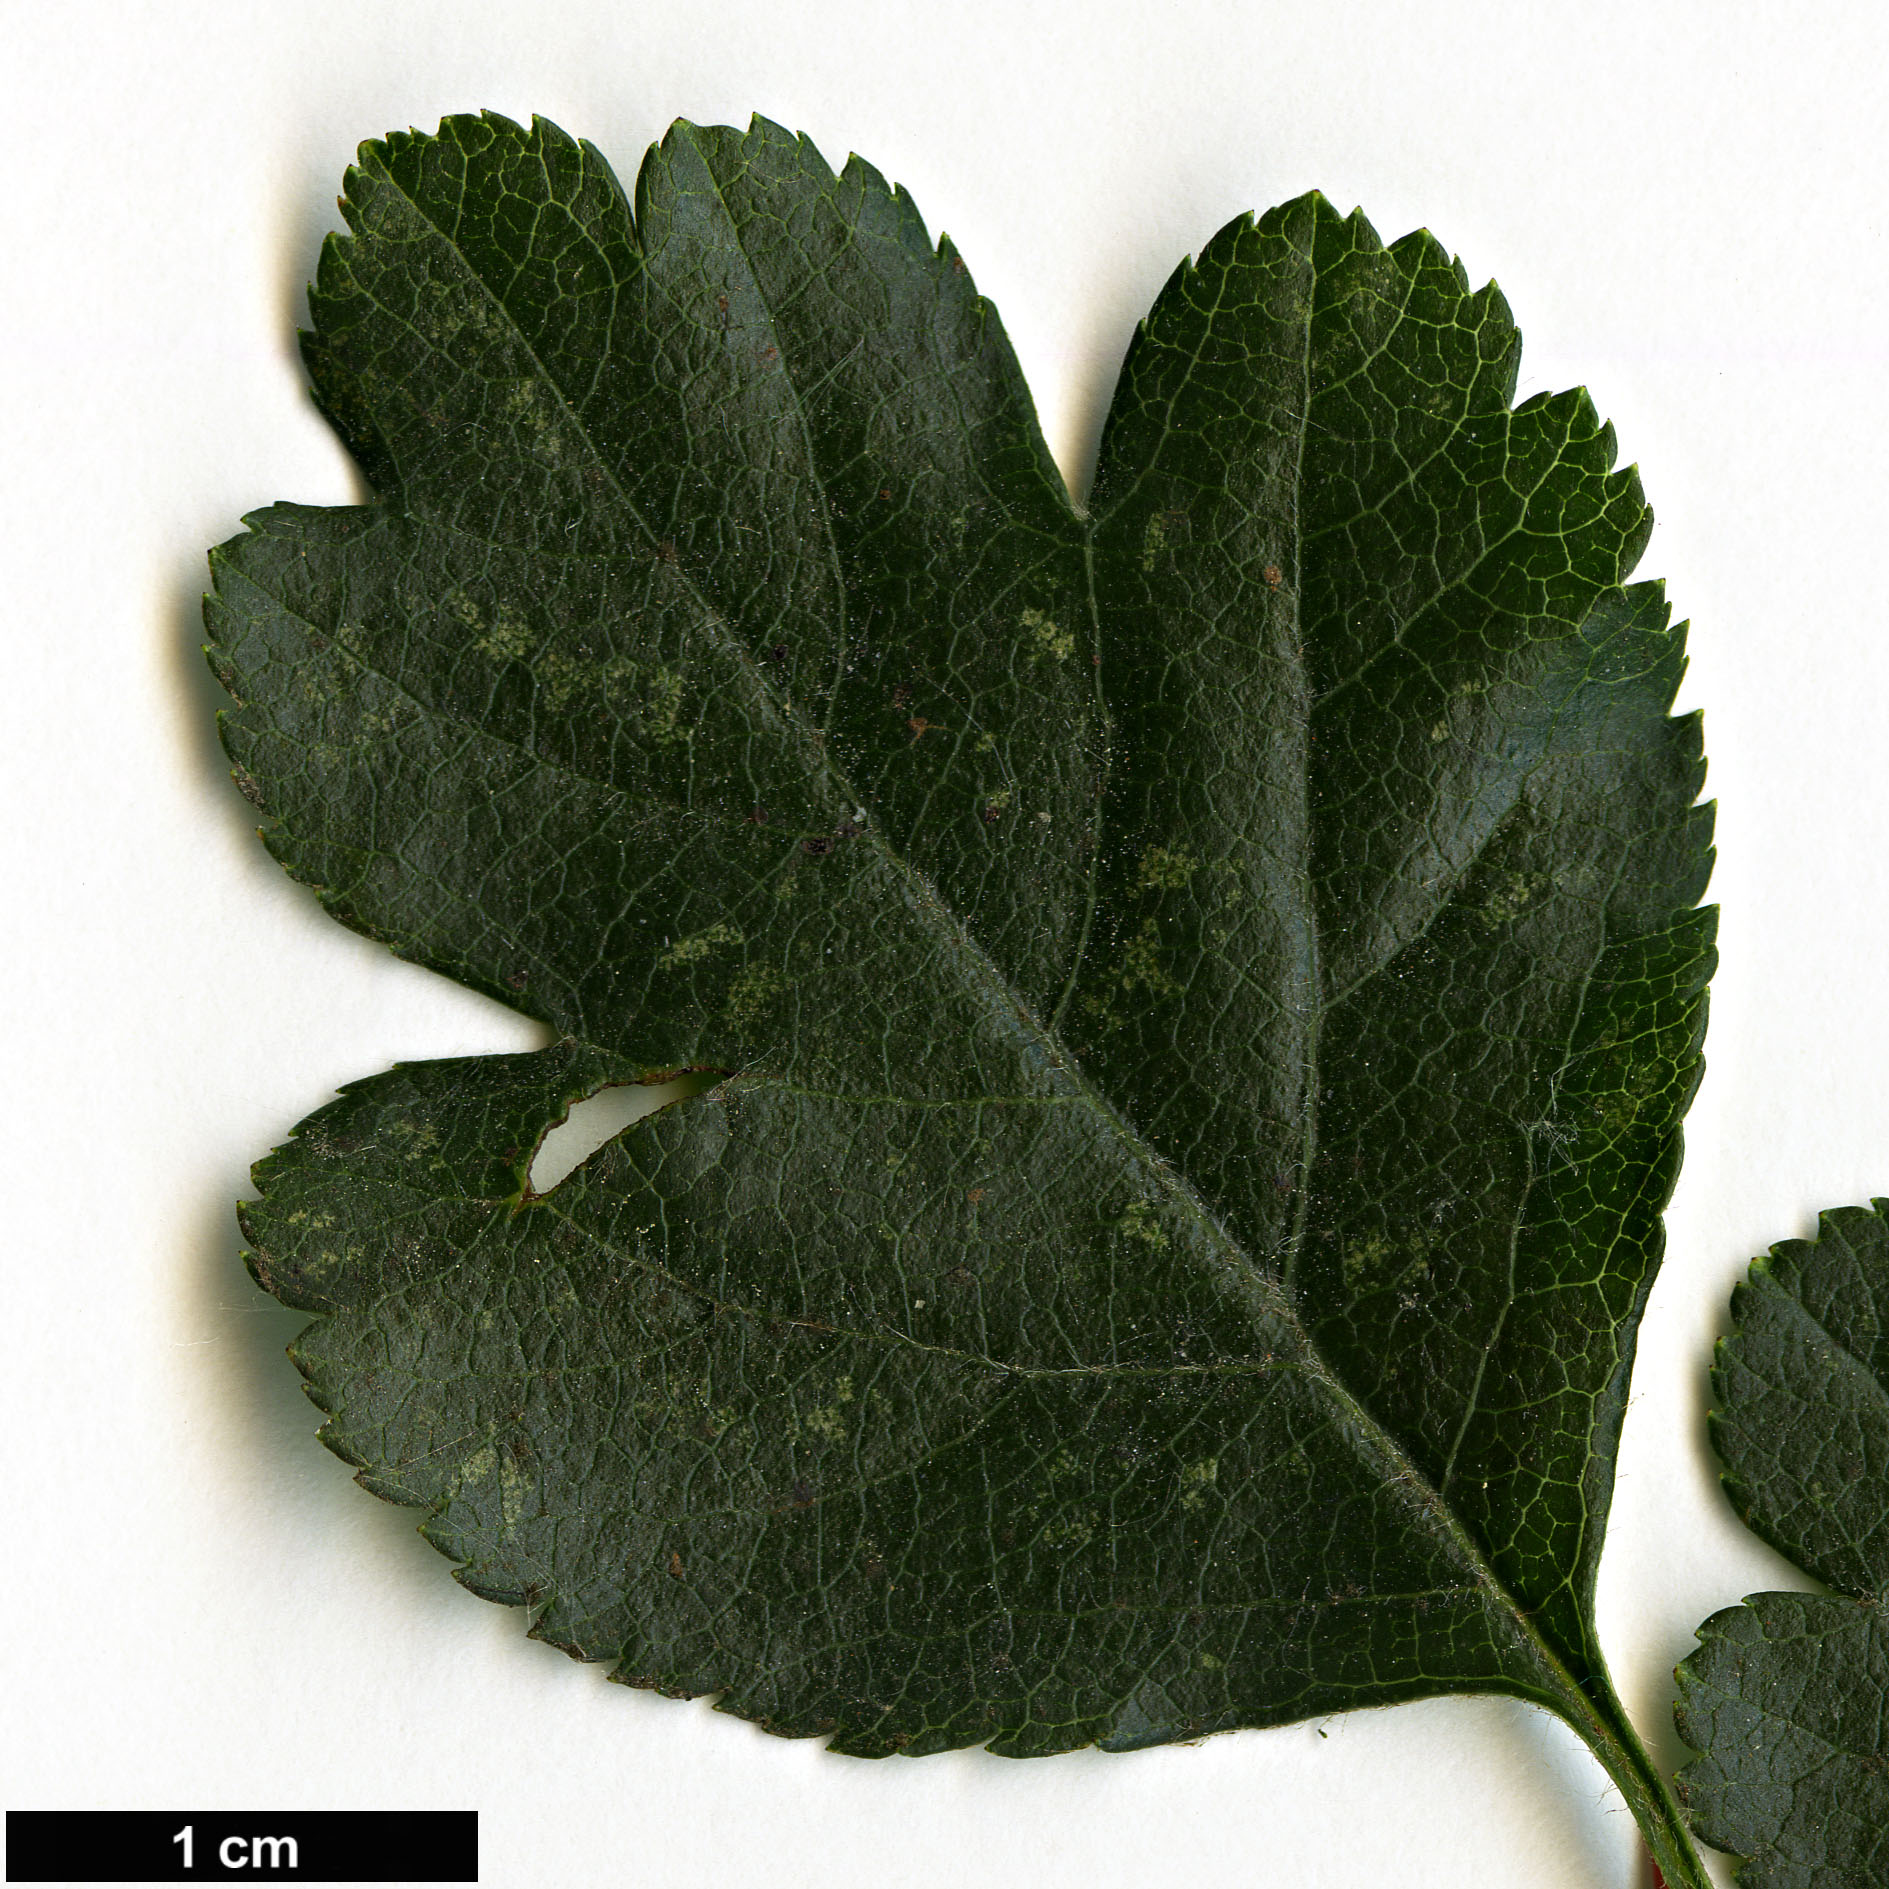 High resolution image: Family: Rosaceae - Genus: Crataegus - Taxon: laevigata